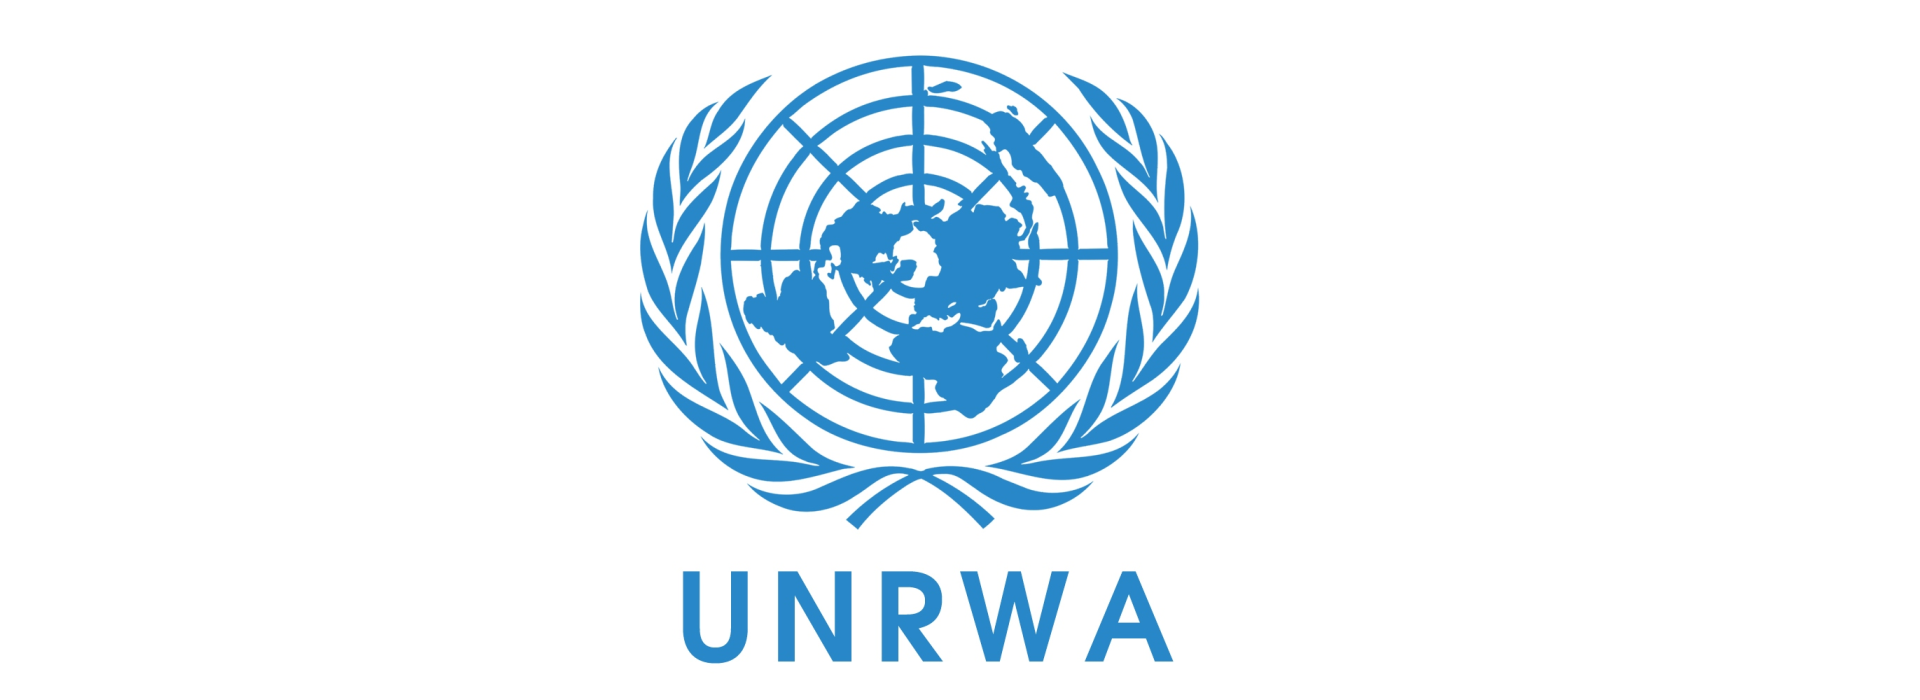 Qəzzaya çatdırılan yardım əhaliyə kifayət etmir - UNRWA